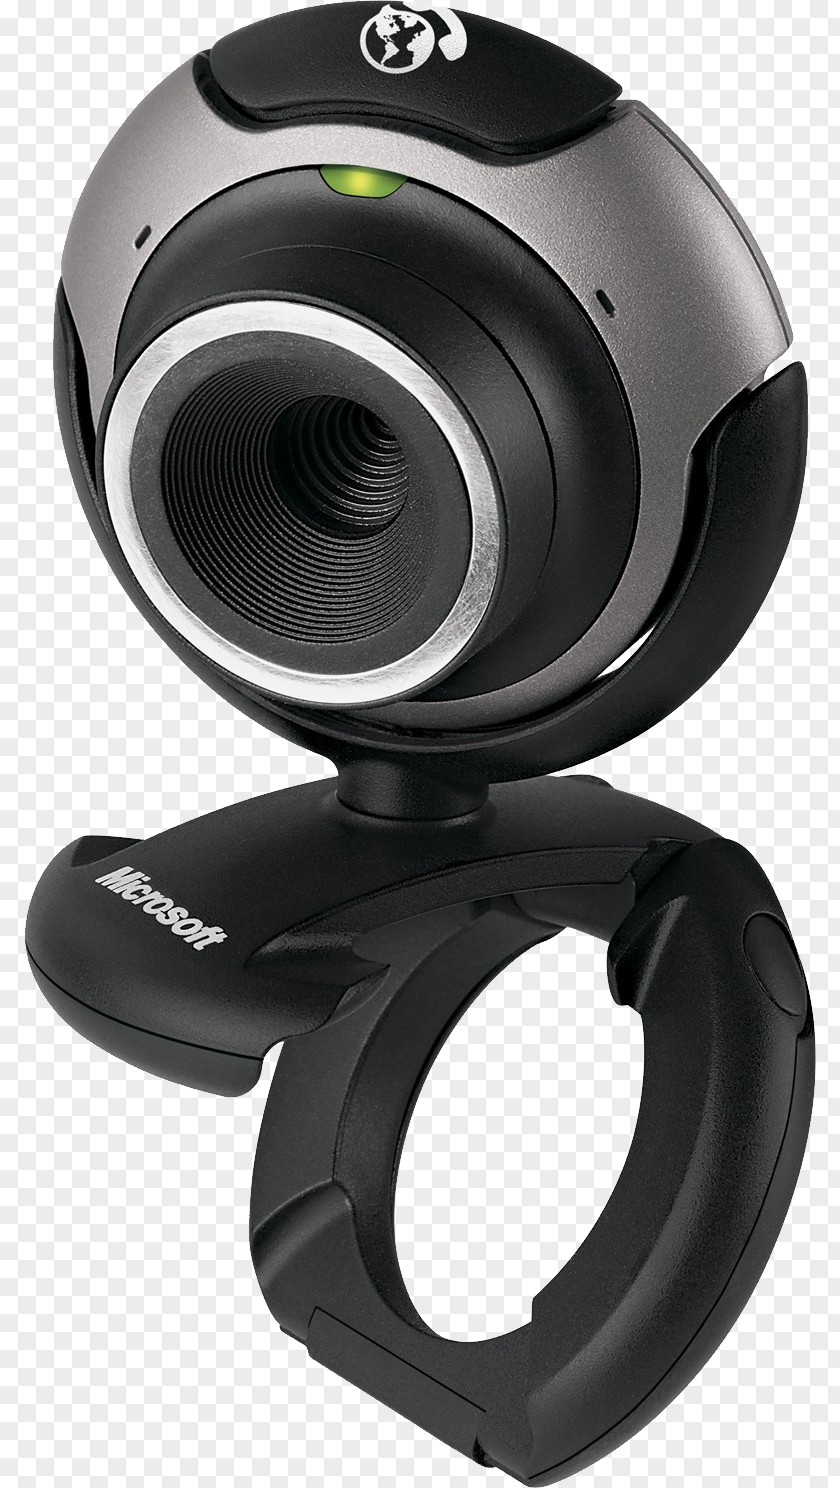 Web Camera Amazon.com Webcam Microsoft LifeCam PNG